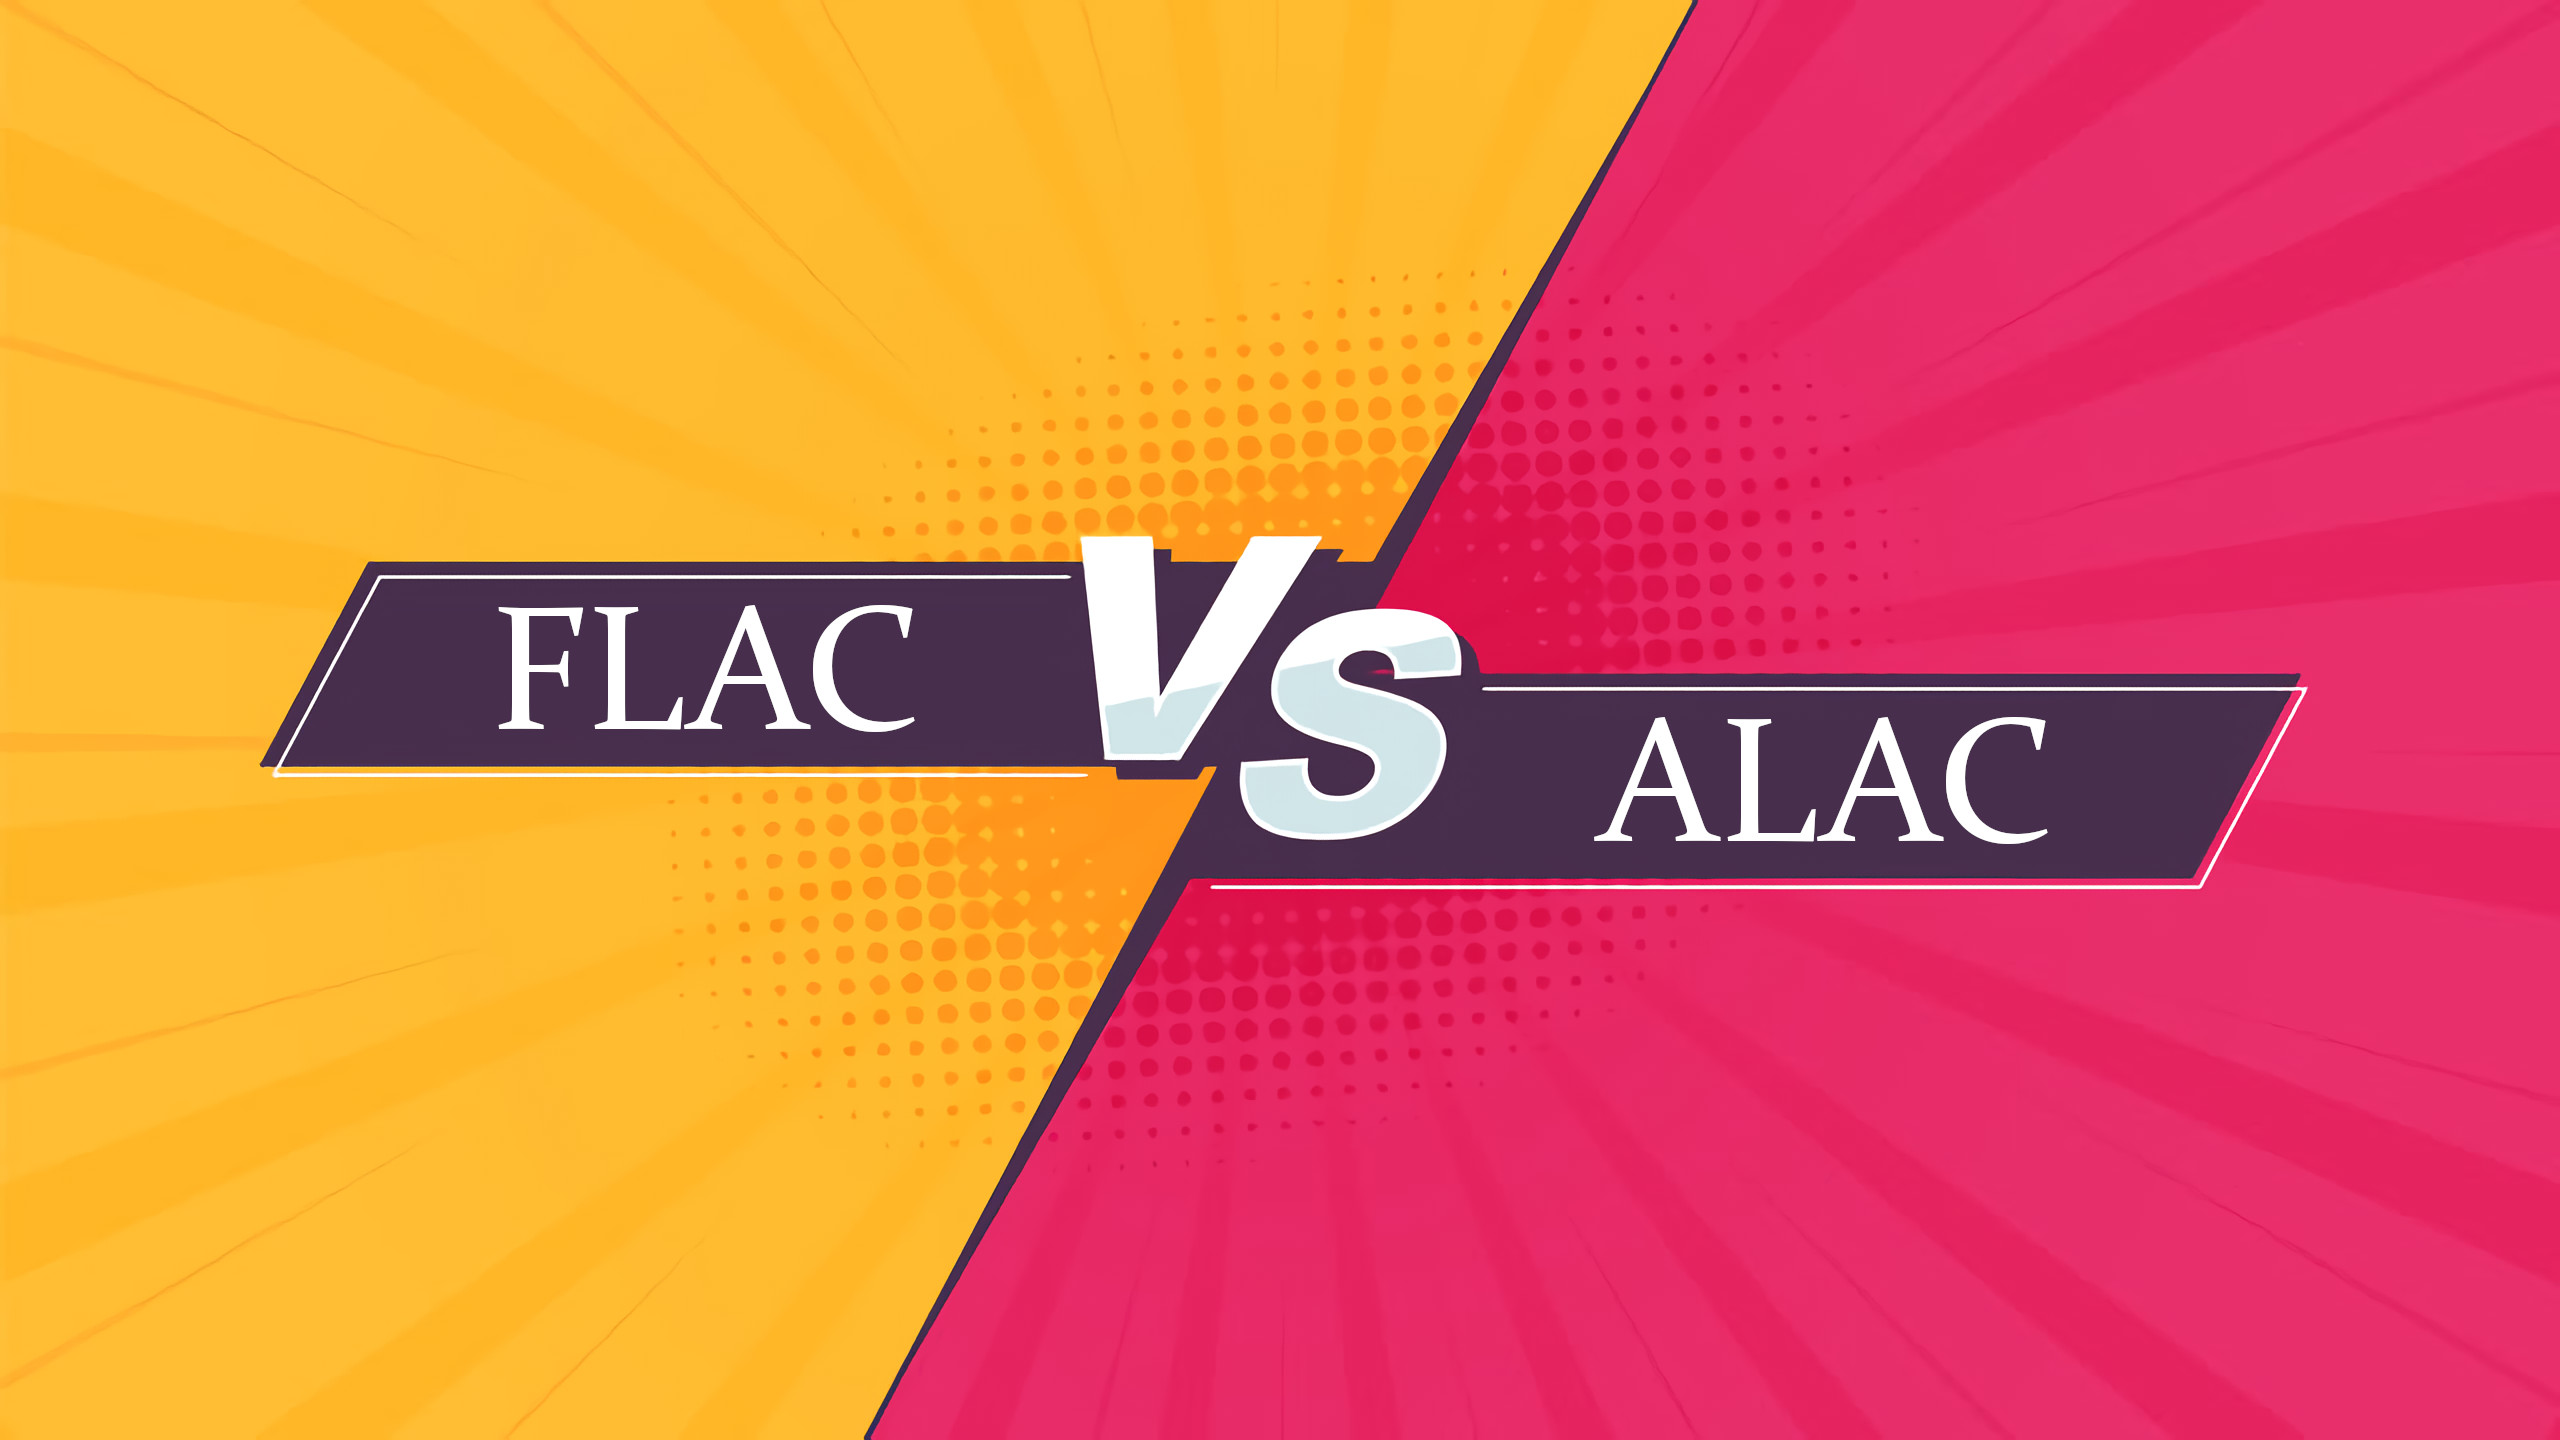 diferencia entre flac y alac, flac vs alac, comparación flac y alac